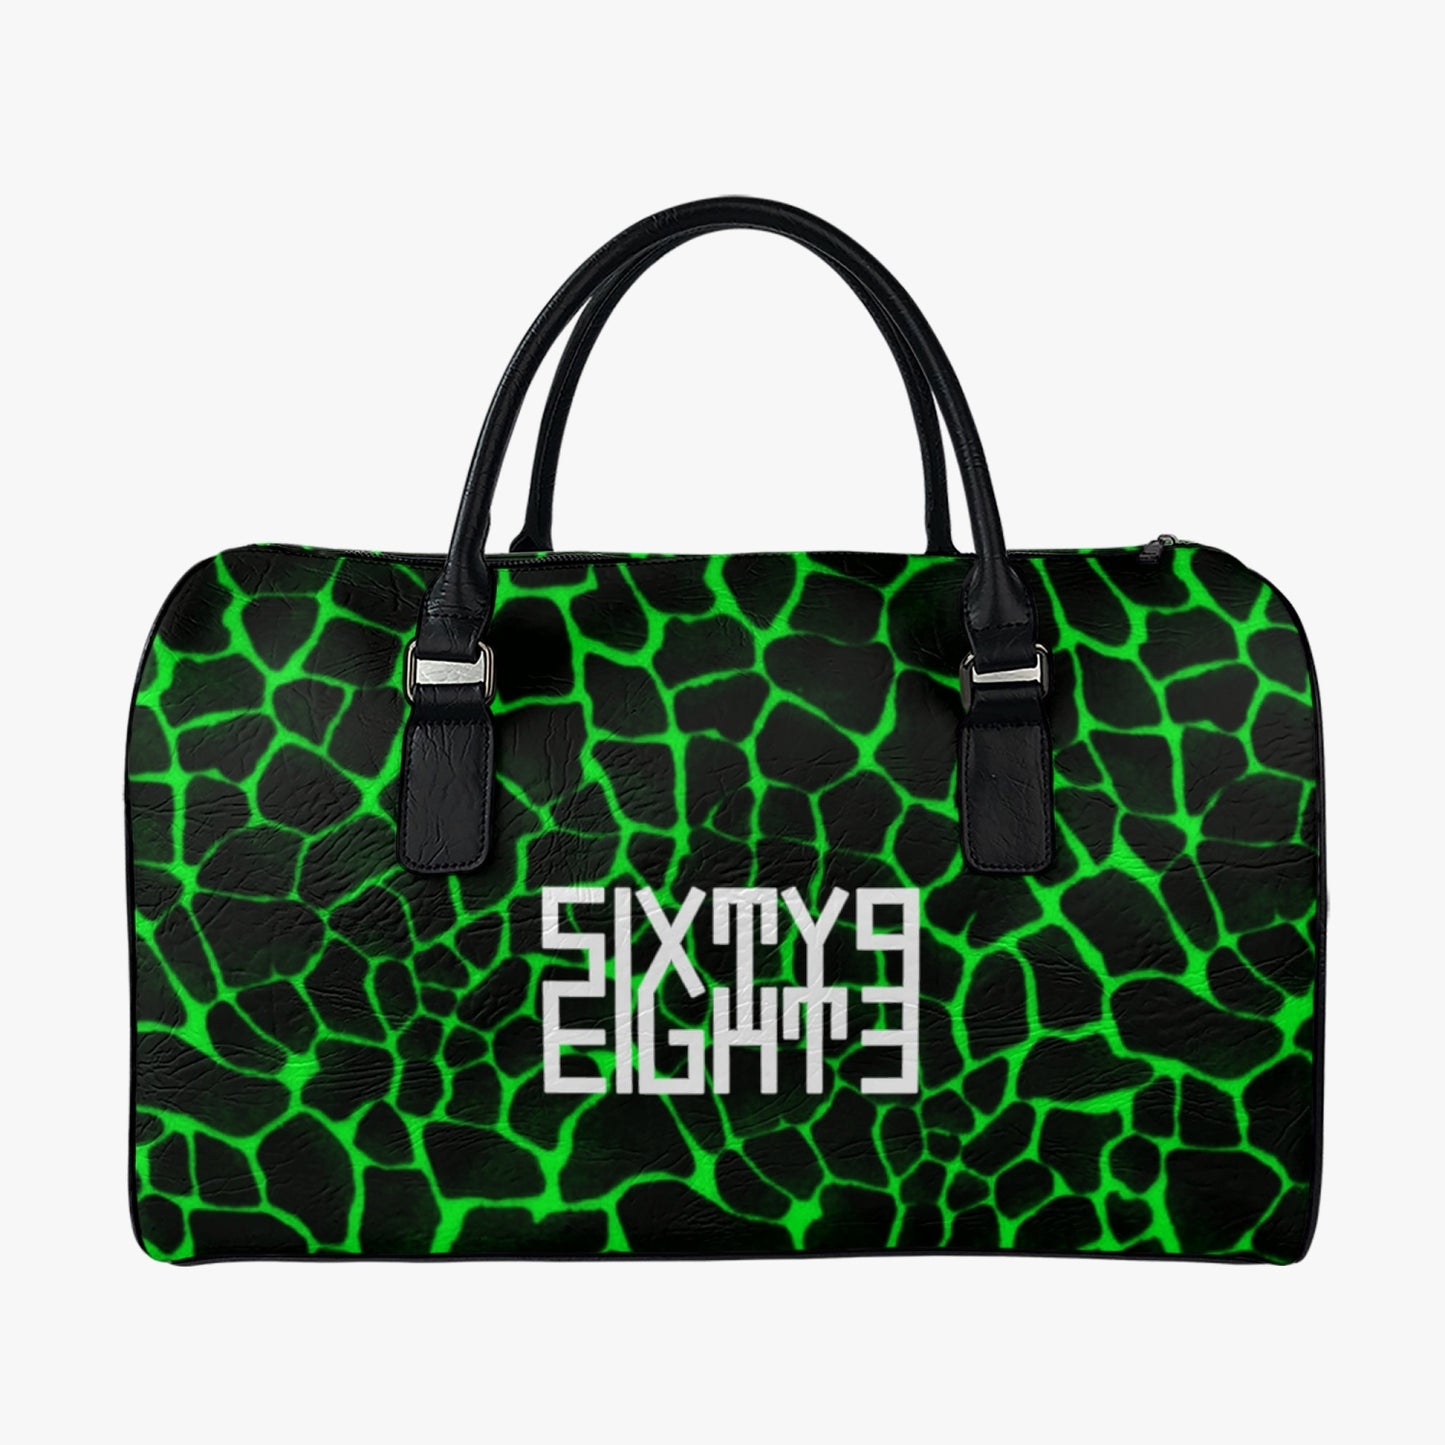 Sixty Eight 93 Logo White Boa Black Lime Leather Portable Travel Bag